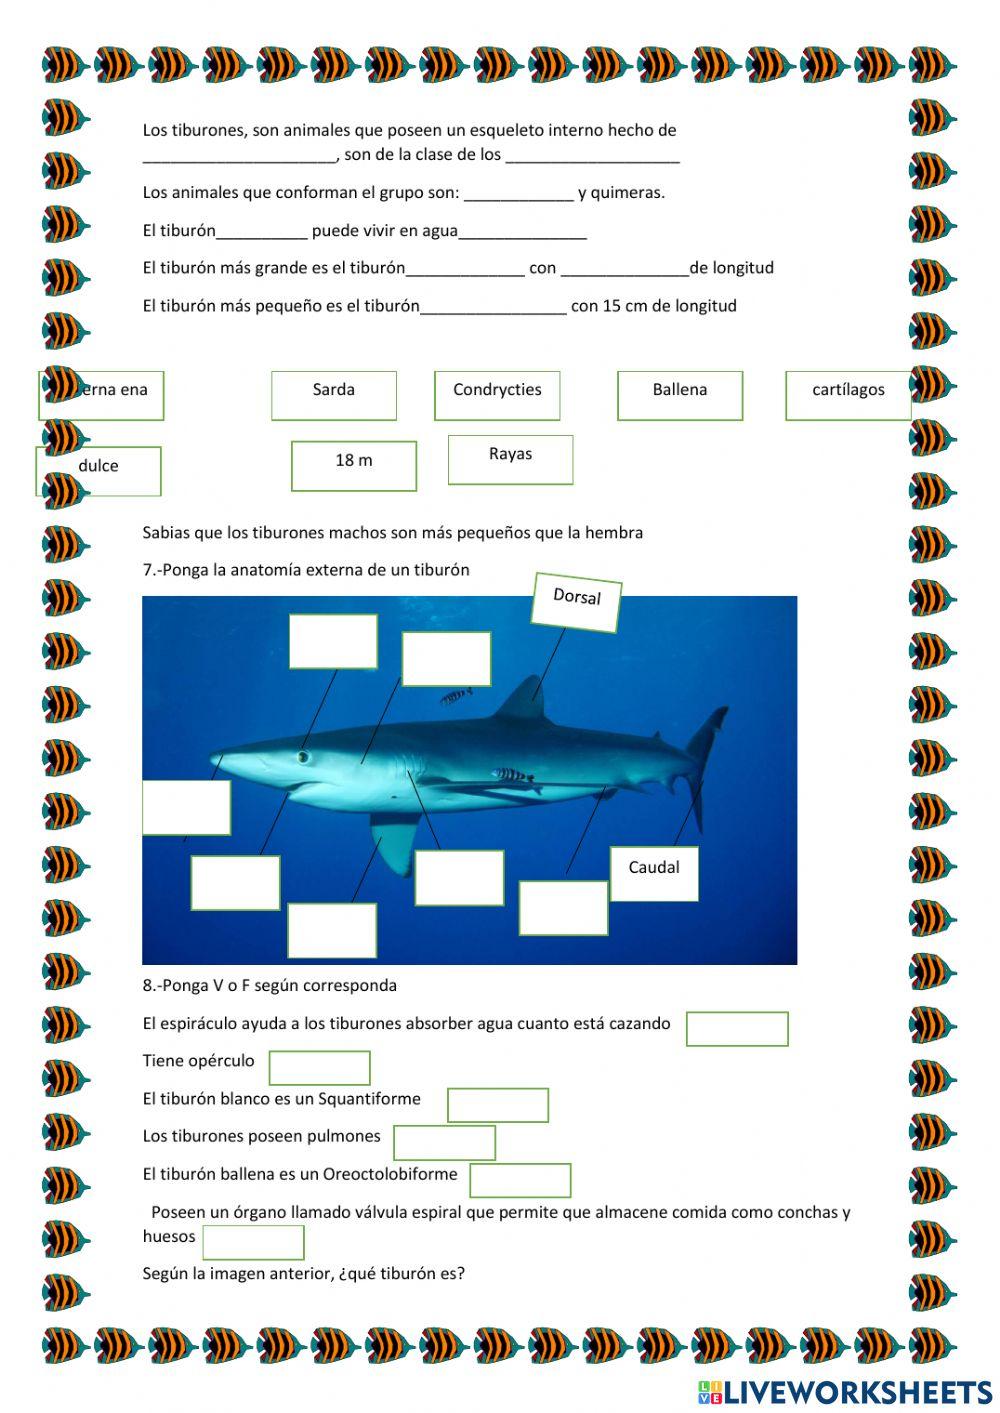 Los tiburones y su taxonomía